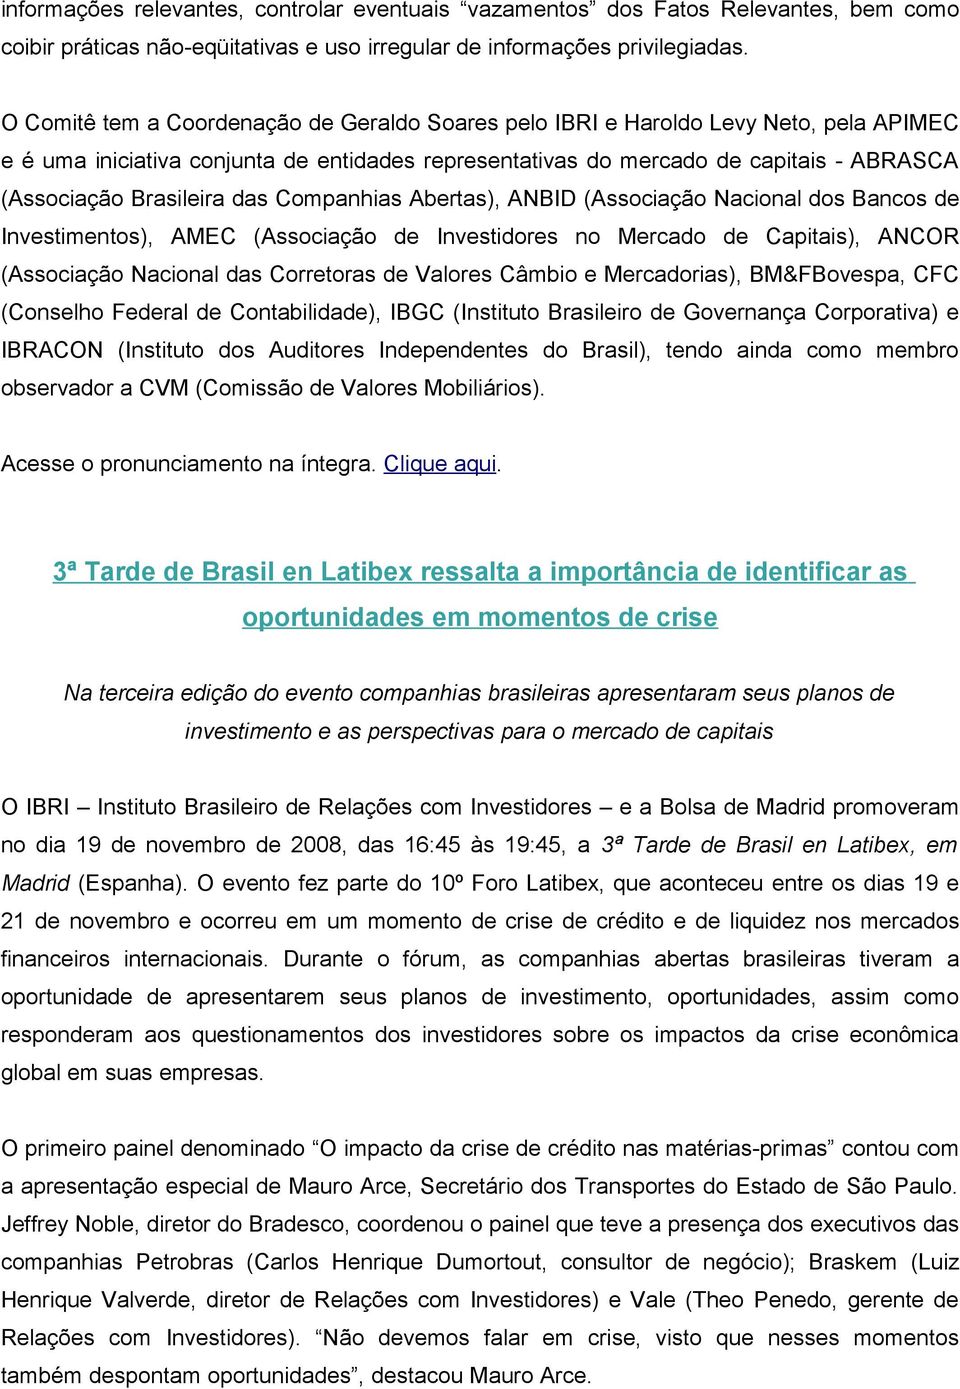 Brasileira das Companhias Abertas), ANBID (Associação Nacional dos Bancos de Investimentos), AMEC (Associação de Investidores no Mercado de Capitais), ANCOR (Associação Nacional das Corretoras de